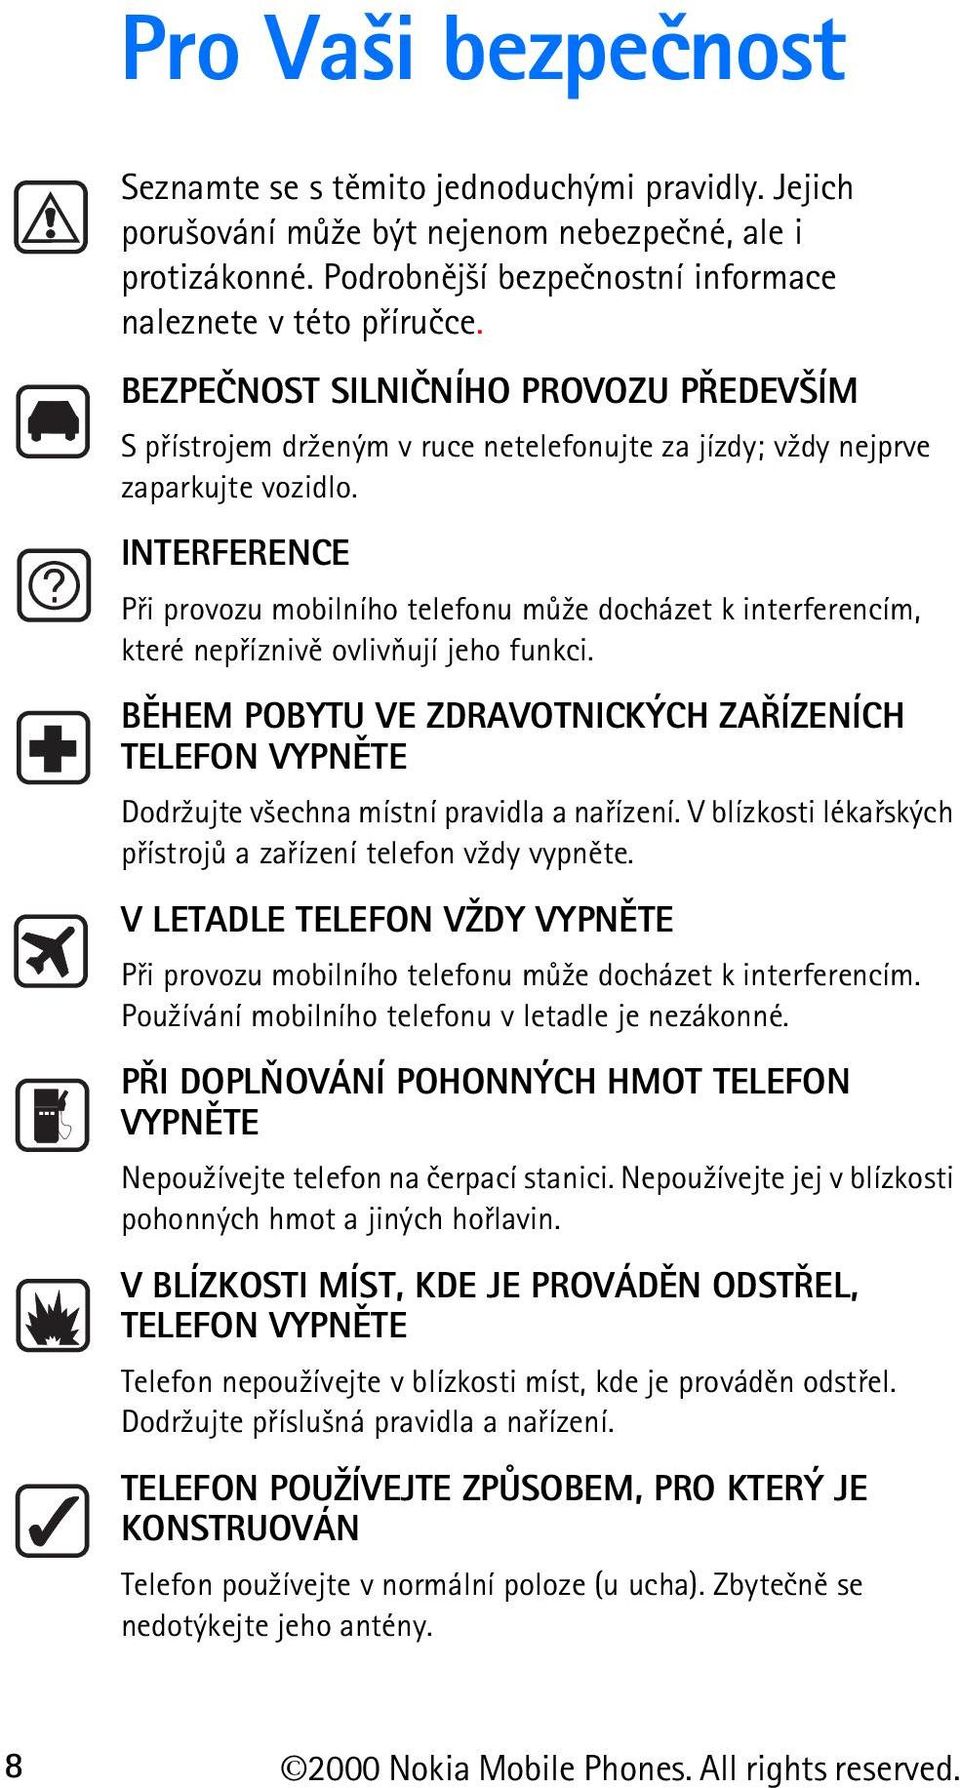 INTERFERENCE Pøi provozu mobilního telefonu mù¾e docházet k interferencím, které nepøíznivì ovlivòují jeho funkci.